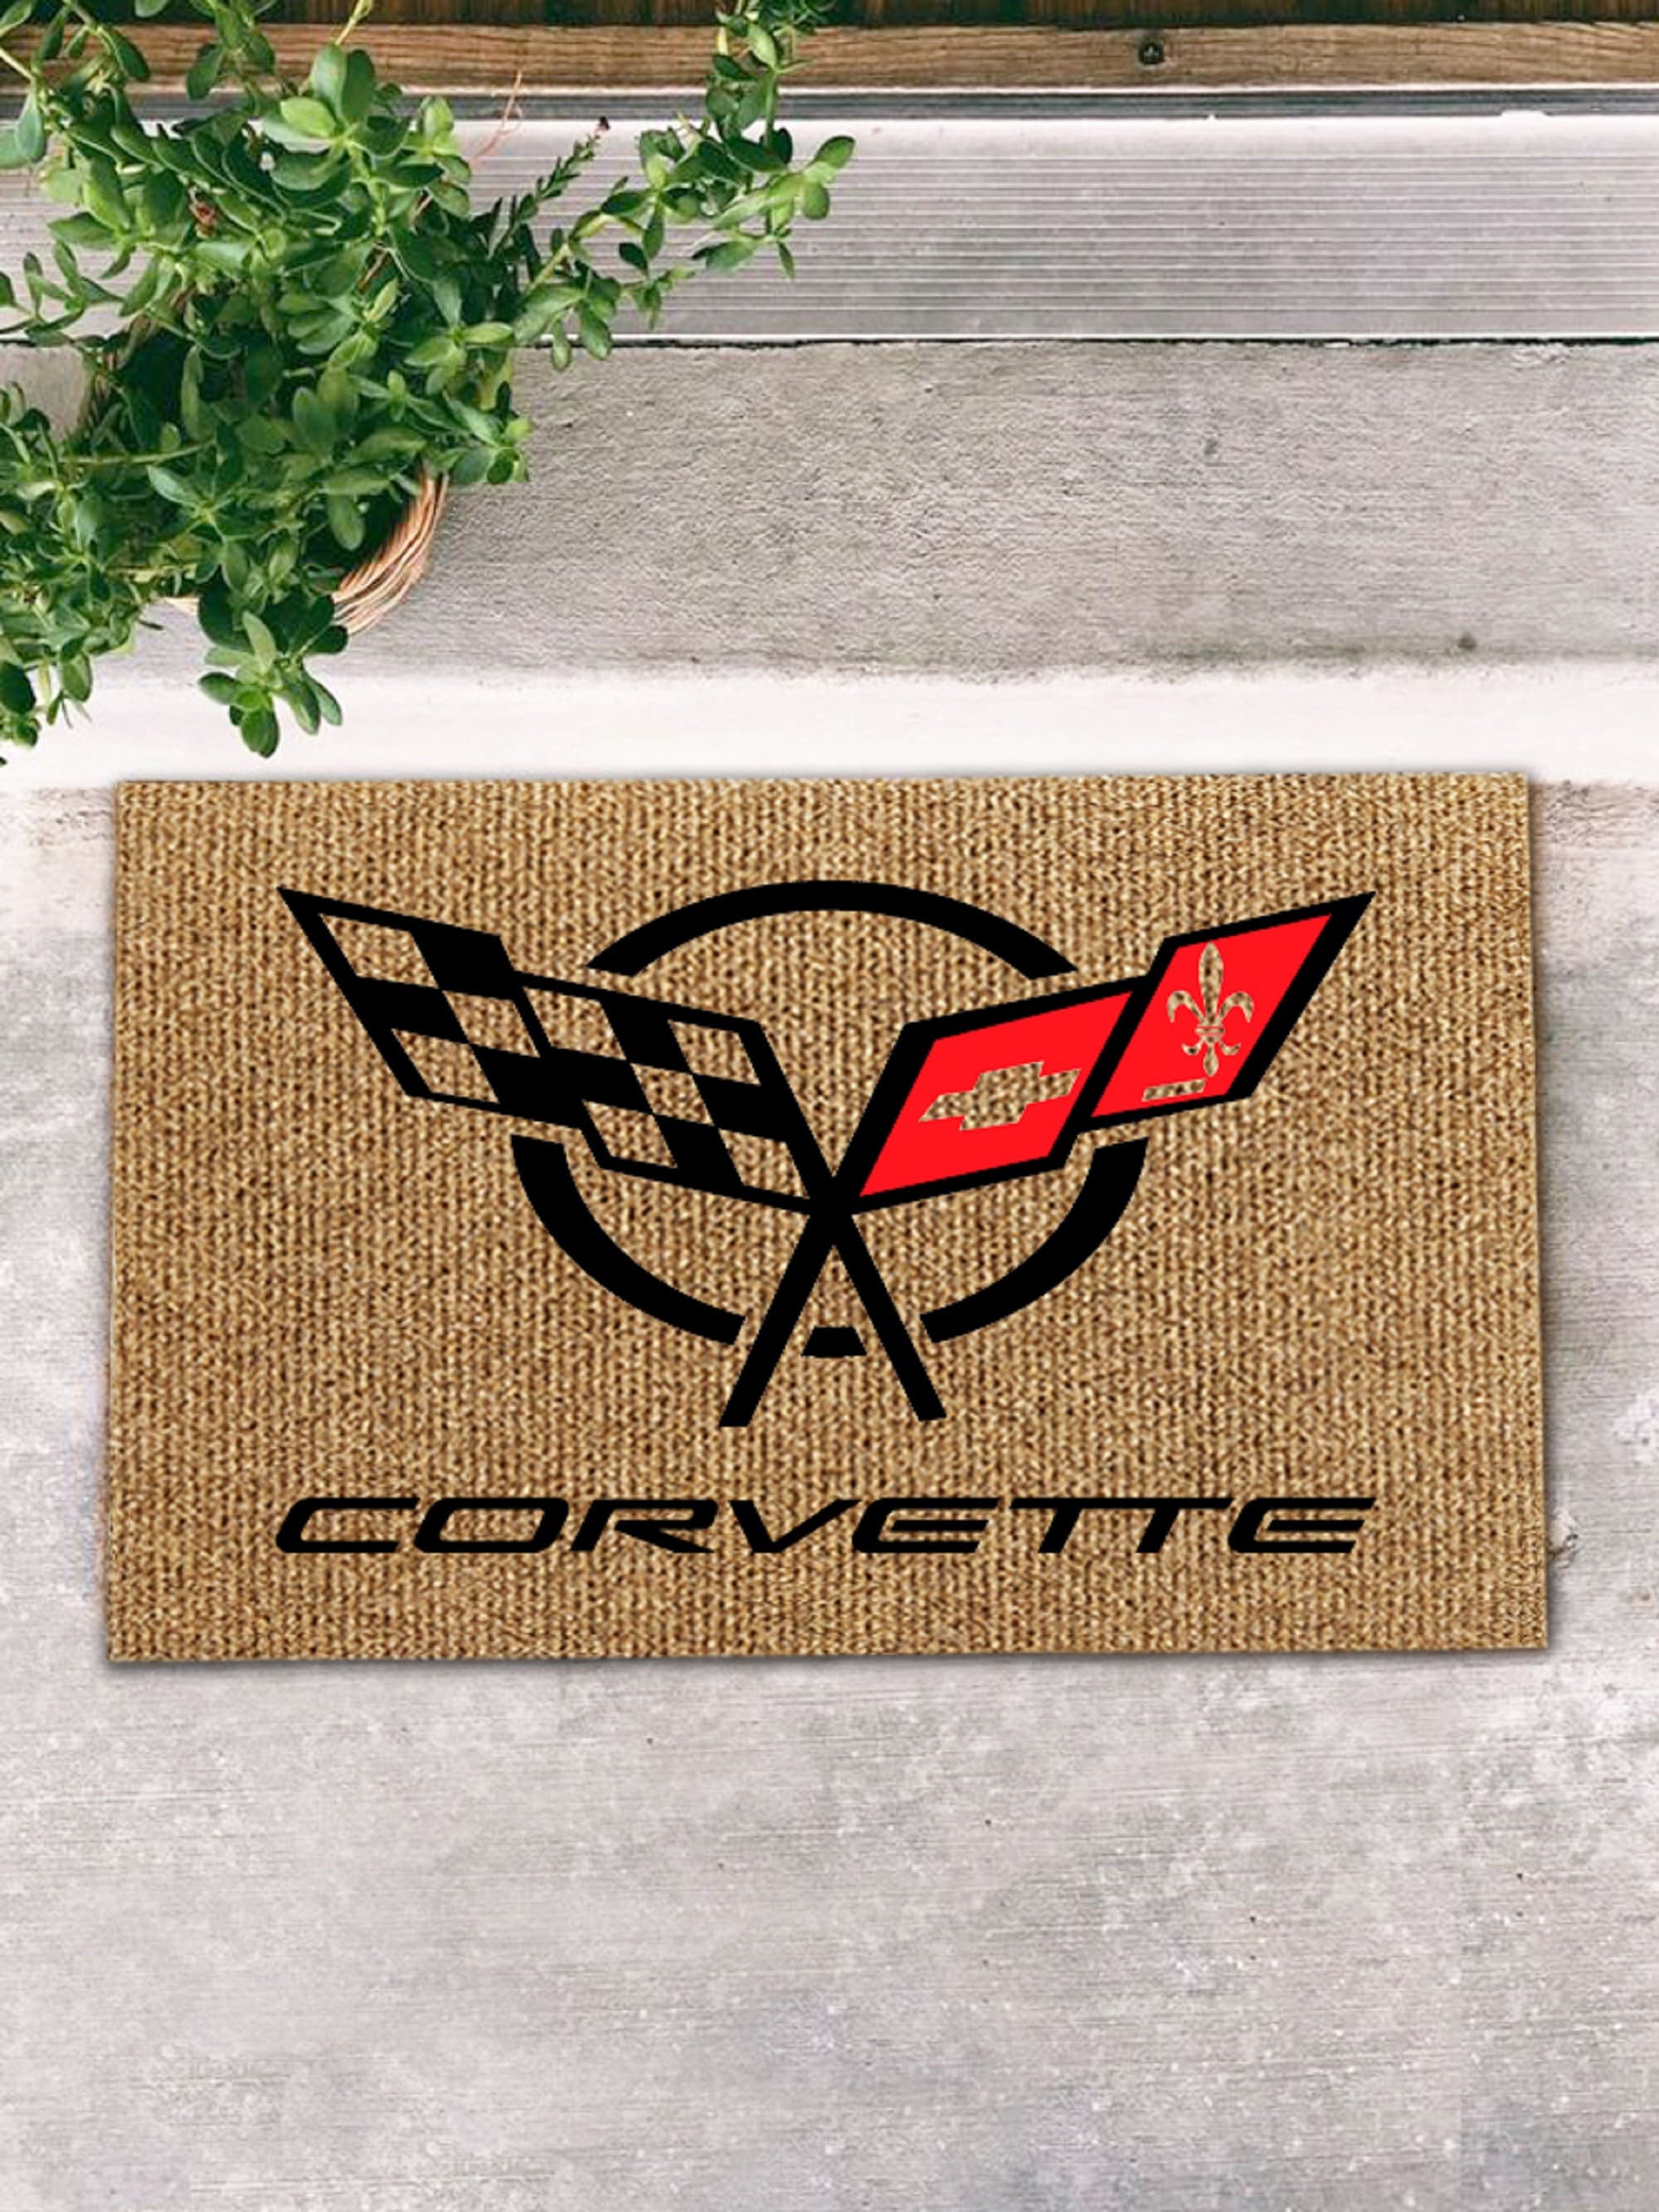 C5 Corvette Red Diamond Plate Aluminum Floor Mats 2pc